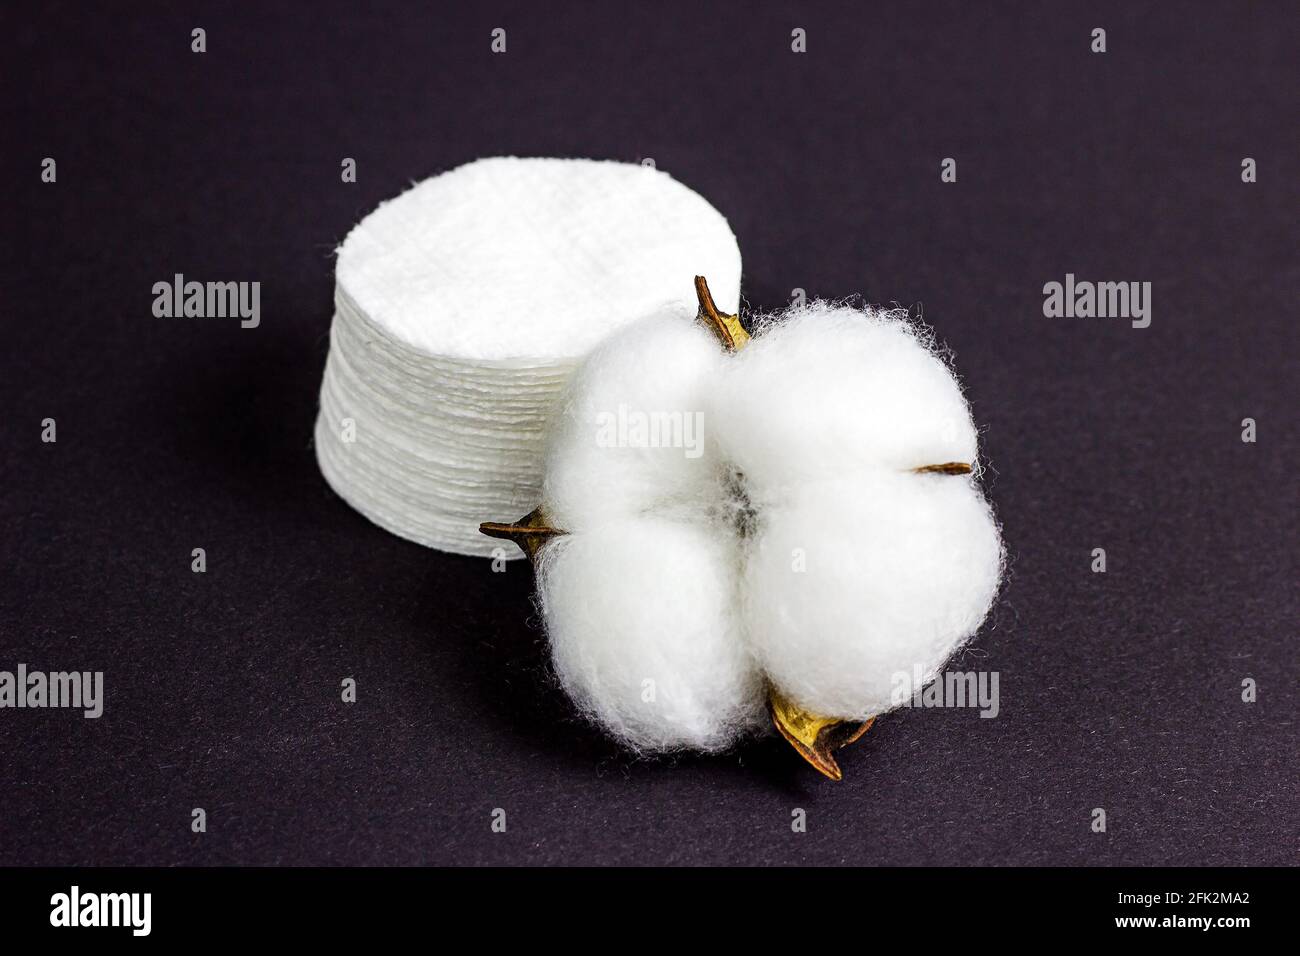 Tamponi bianchi in morbido cotone per igiene e assistenza sanitaria su sfondo nero. Foto Stock